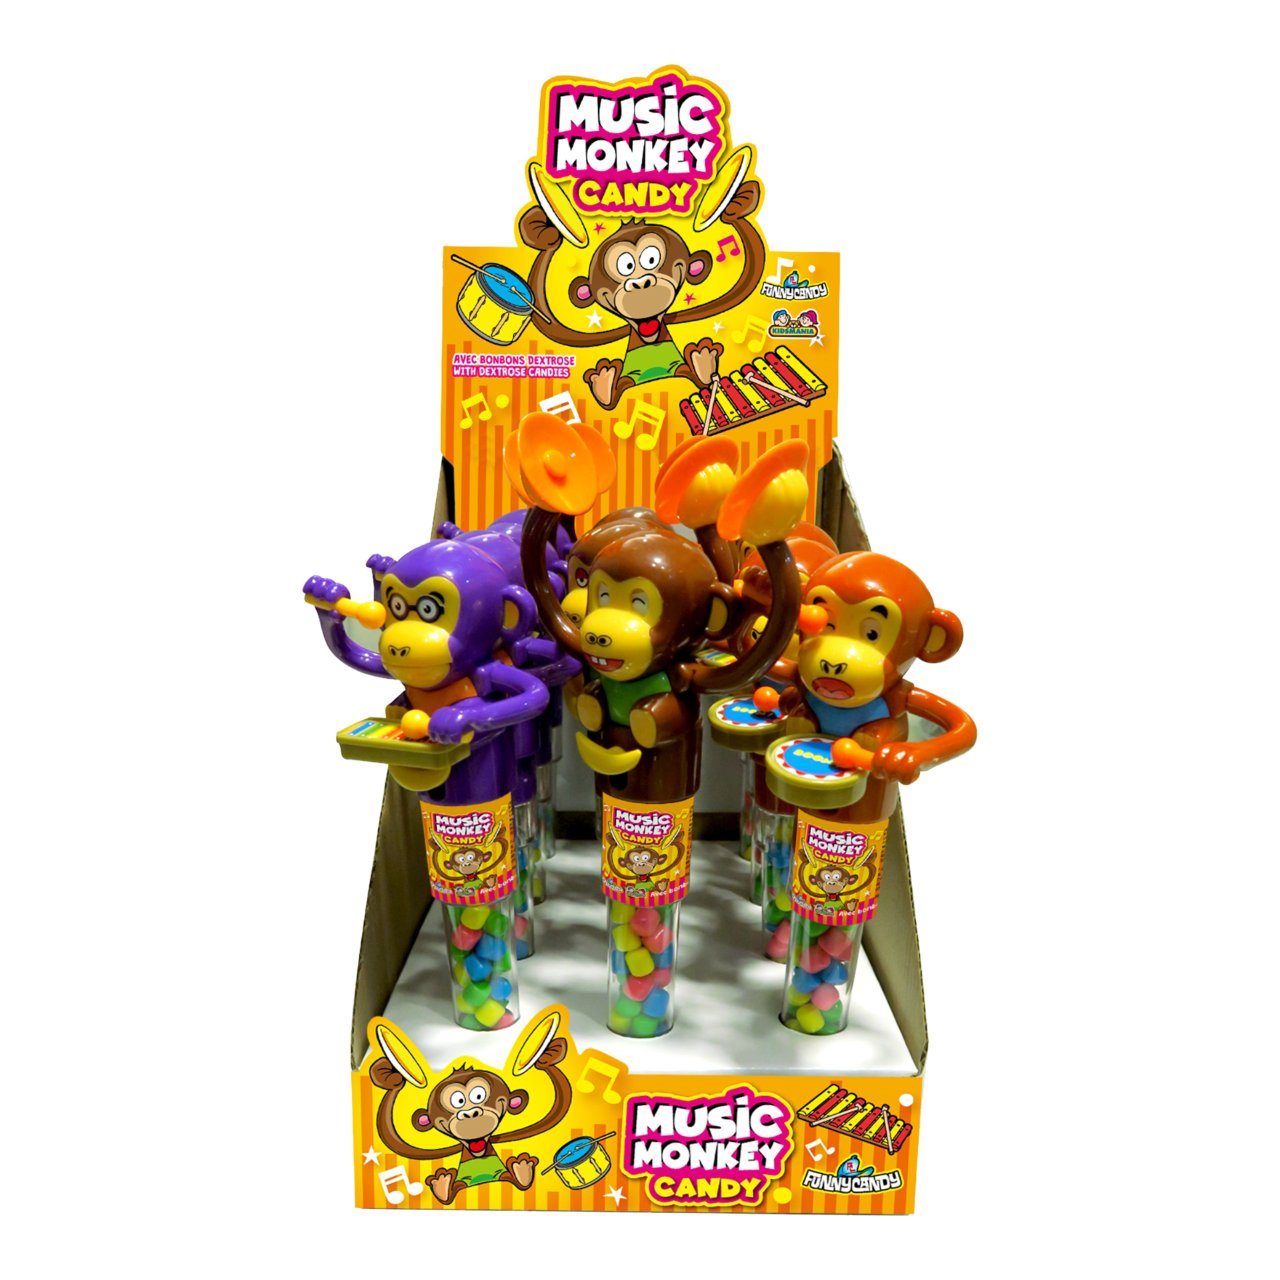 Music monkey candy